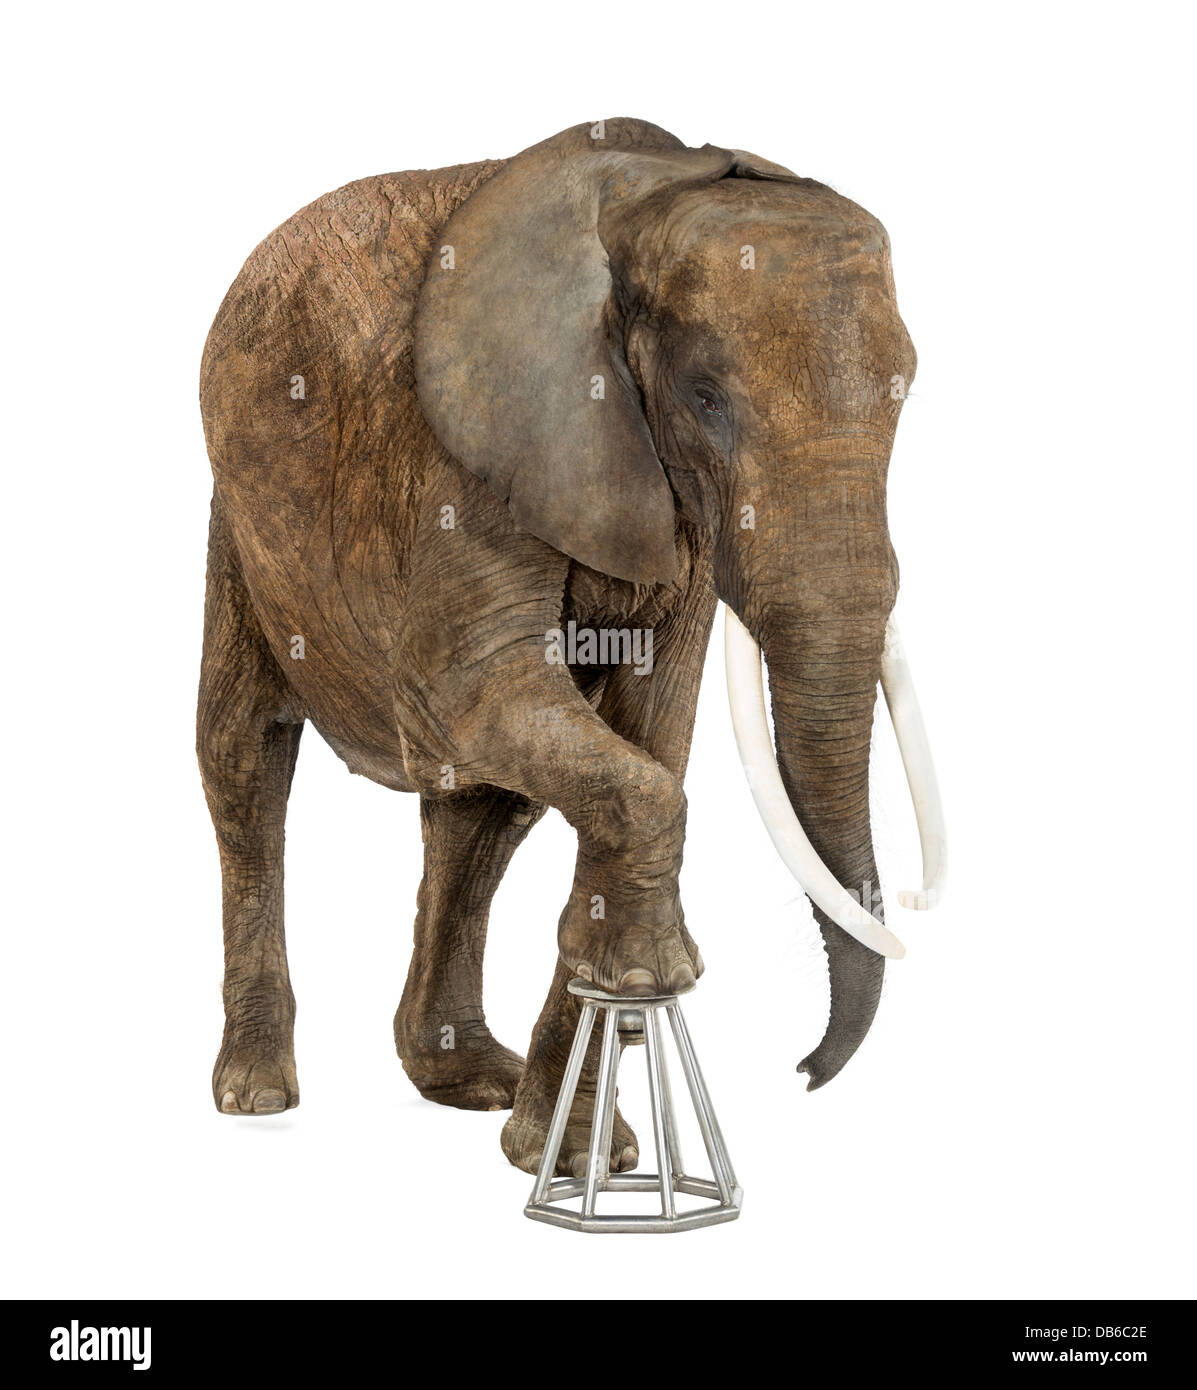 African elephant, Loxodonta africana, stepping onto stool against white background Stock Photo